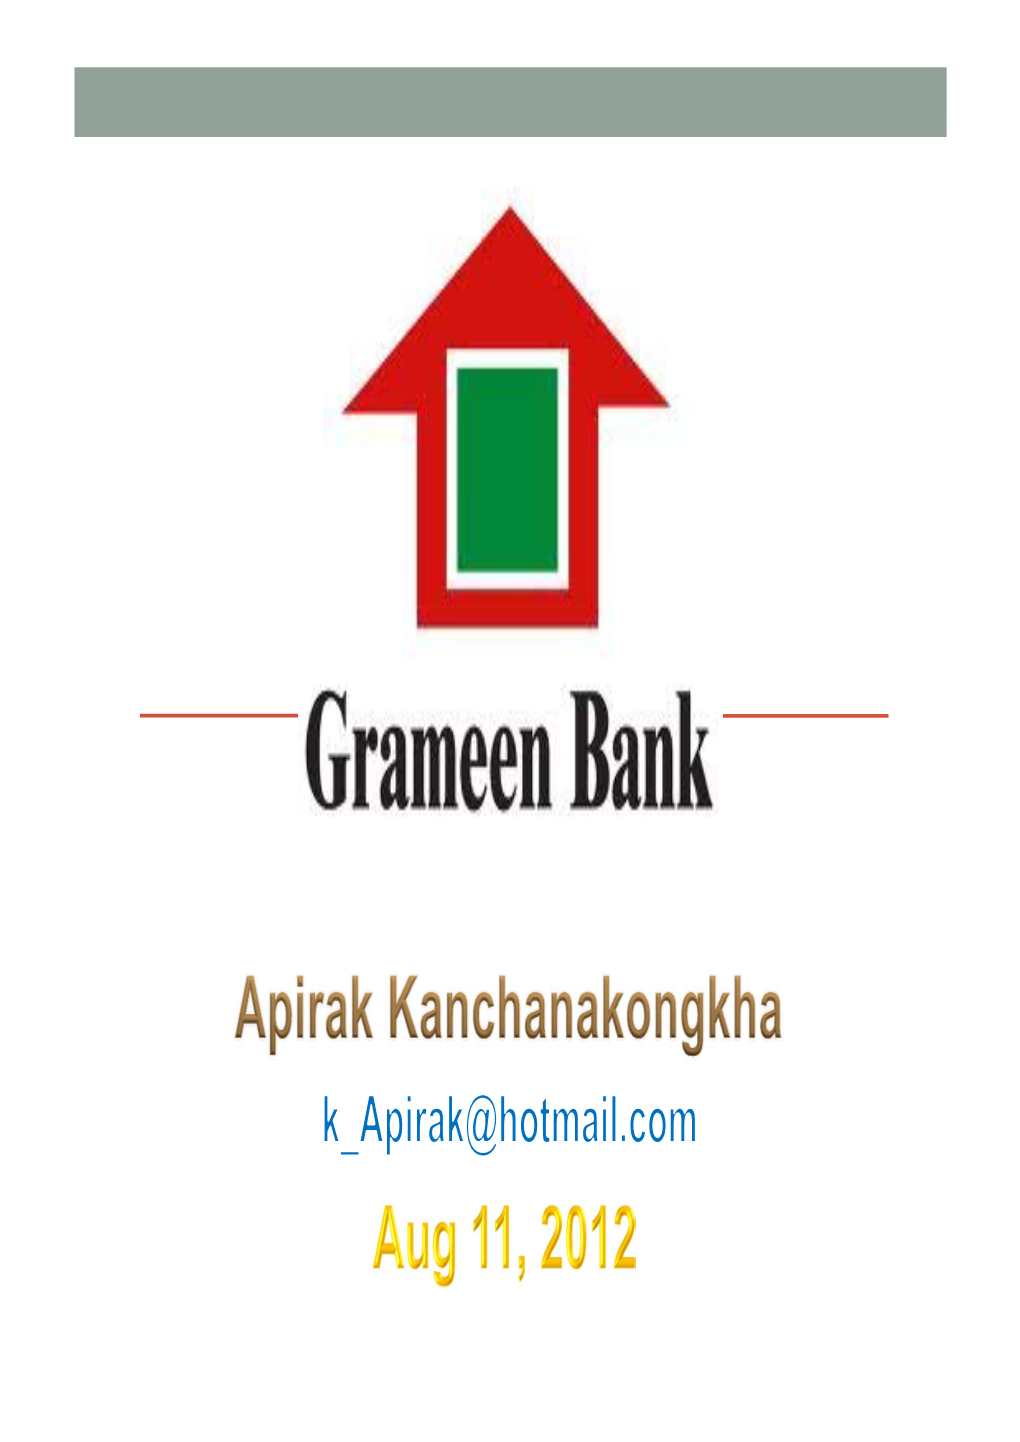 Grameen Bank